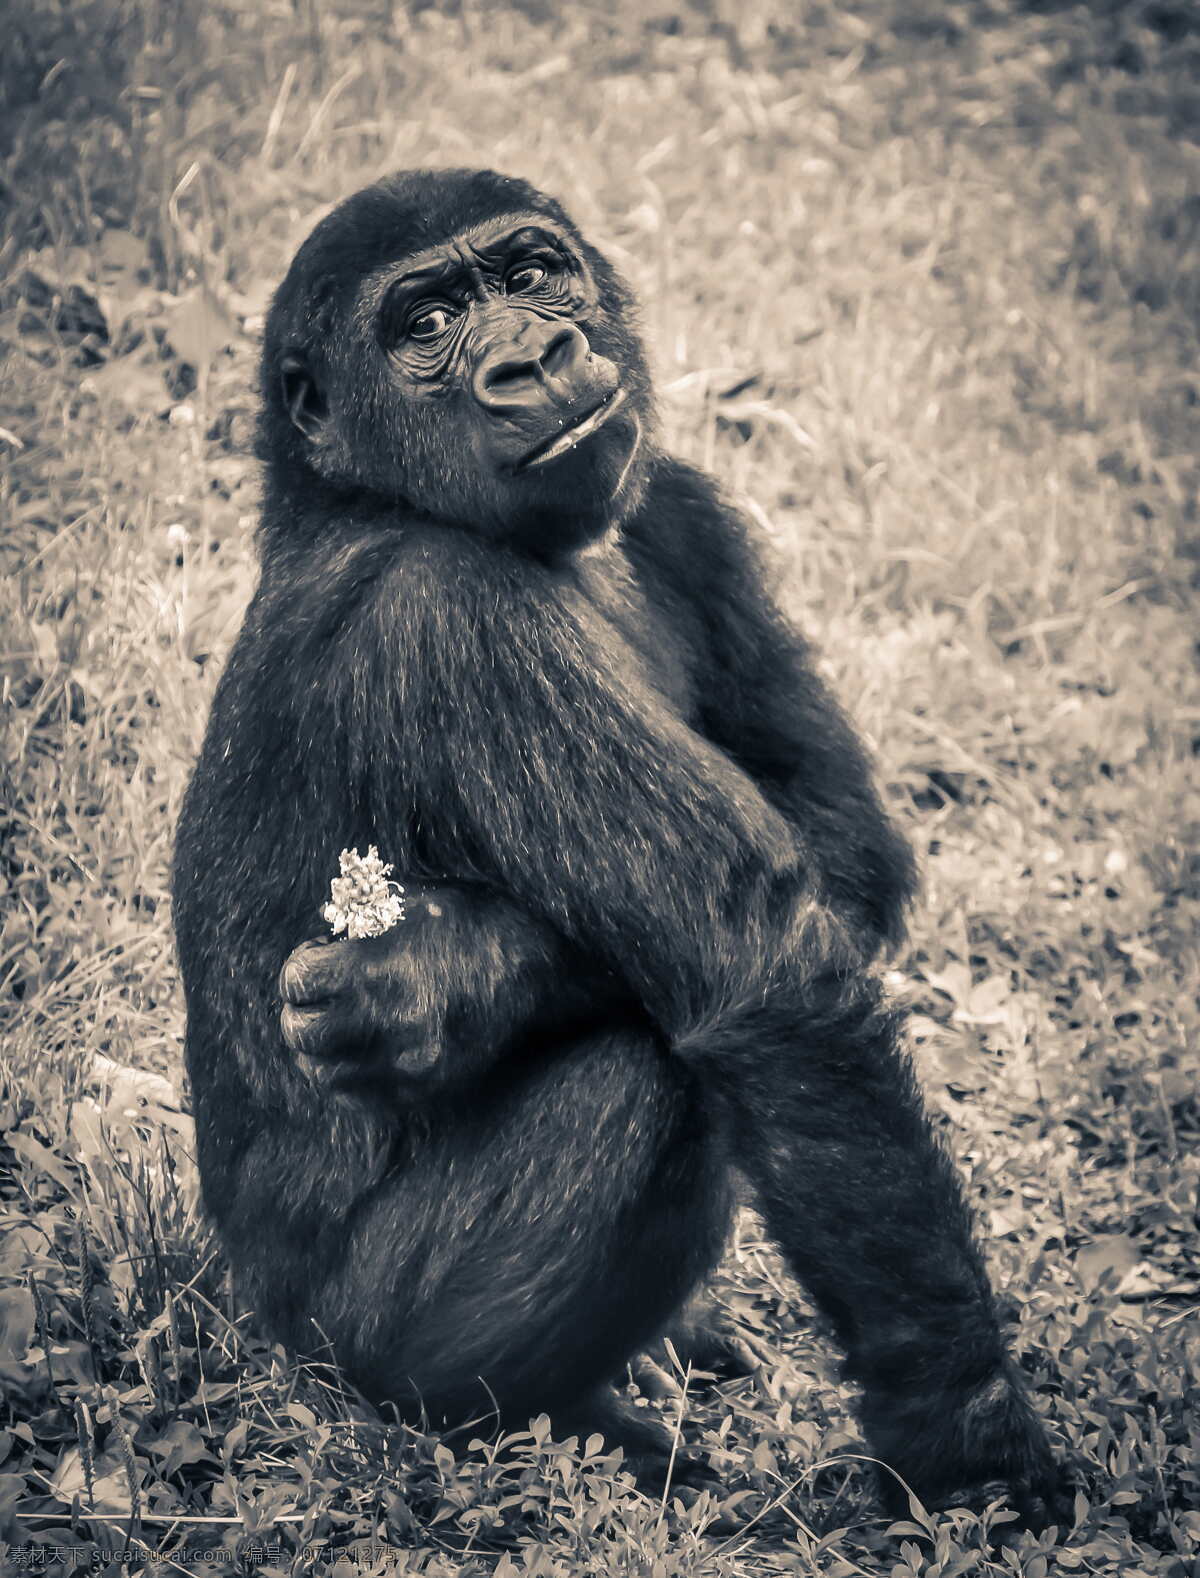 大猩猩黑猩猩 大猩猩 黑猩猩 猩猩 类人猿 西非大猩猩 低地大猩猩 克罗斯大猩猩 东非大猩猩 山地大猩猩 森林大猩猩 草原大猩猩 森林黑猩猩 草原黑猩猩 生物世界 野生动物